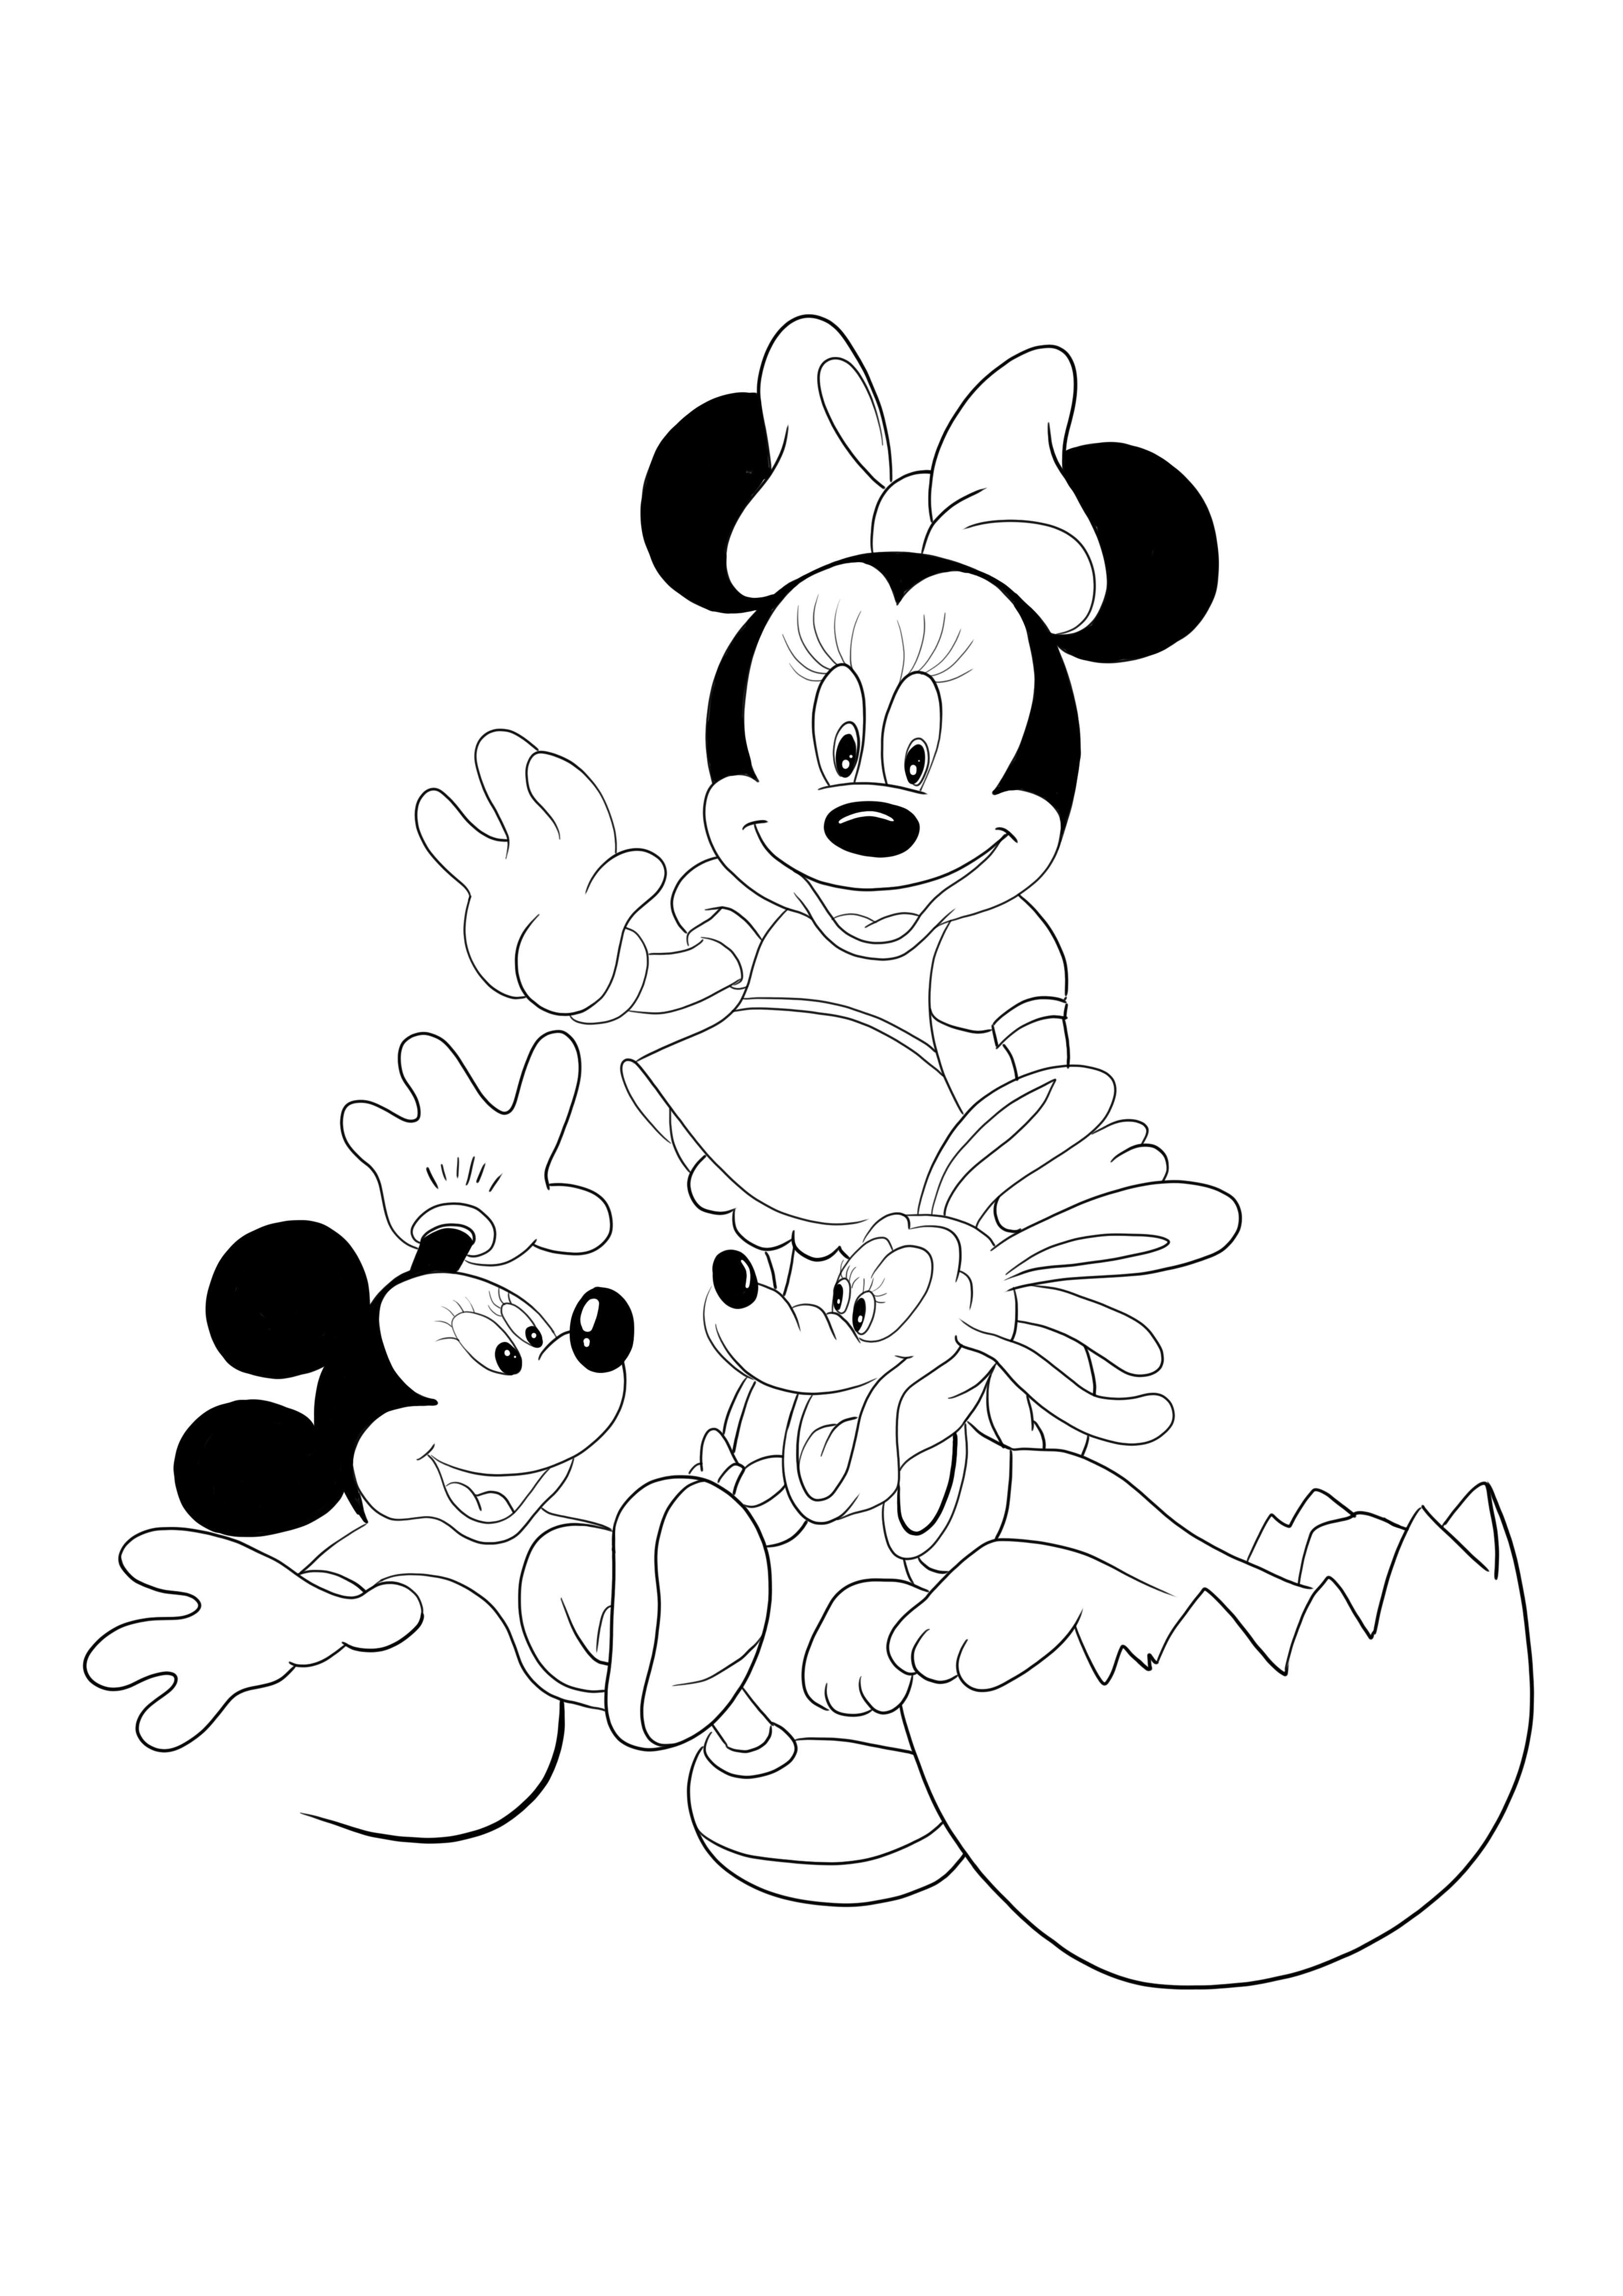 Minnie és Mickey ingyenes nyomtatás és színezés minden korosztály számára